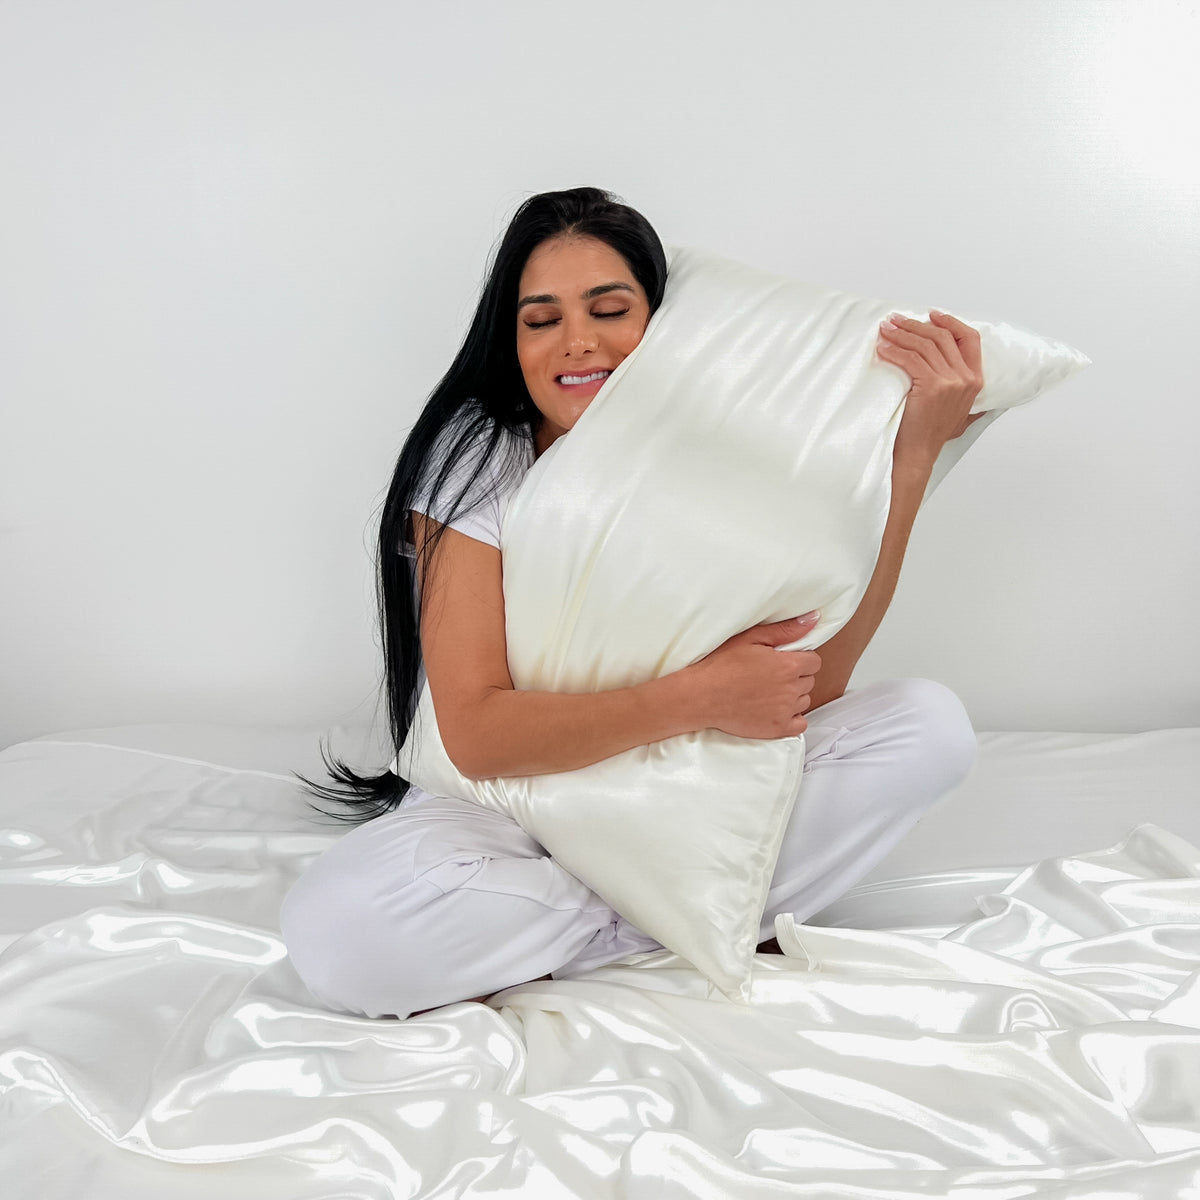 19 Momme Silk Pillowcase - White